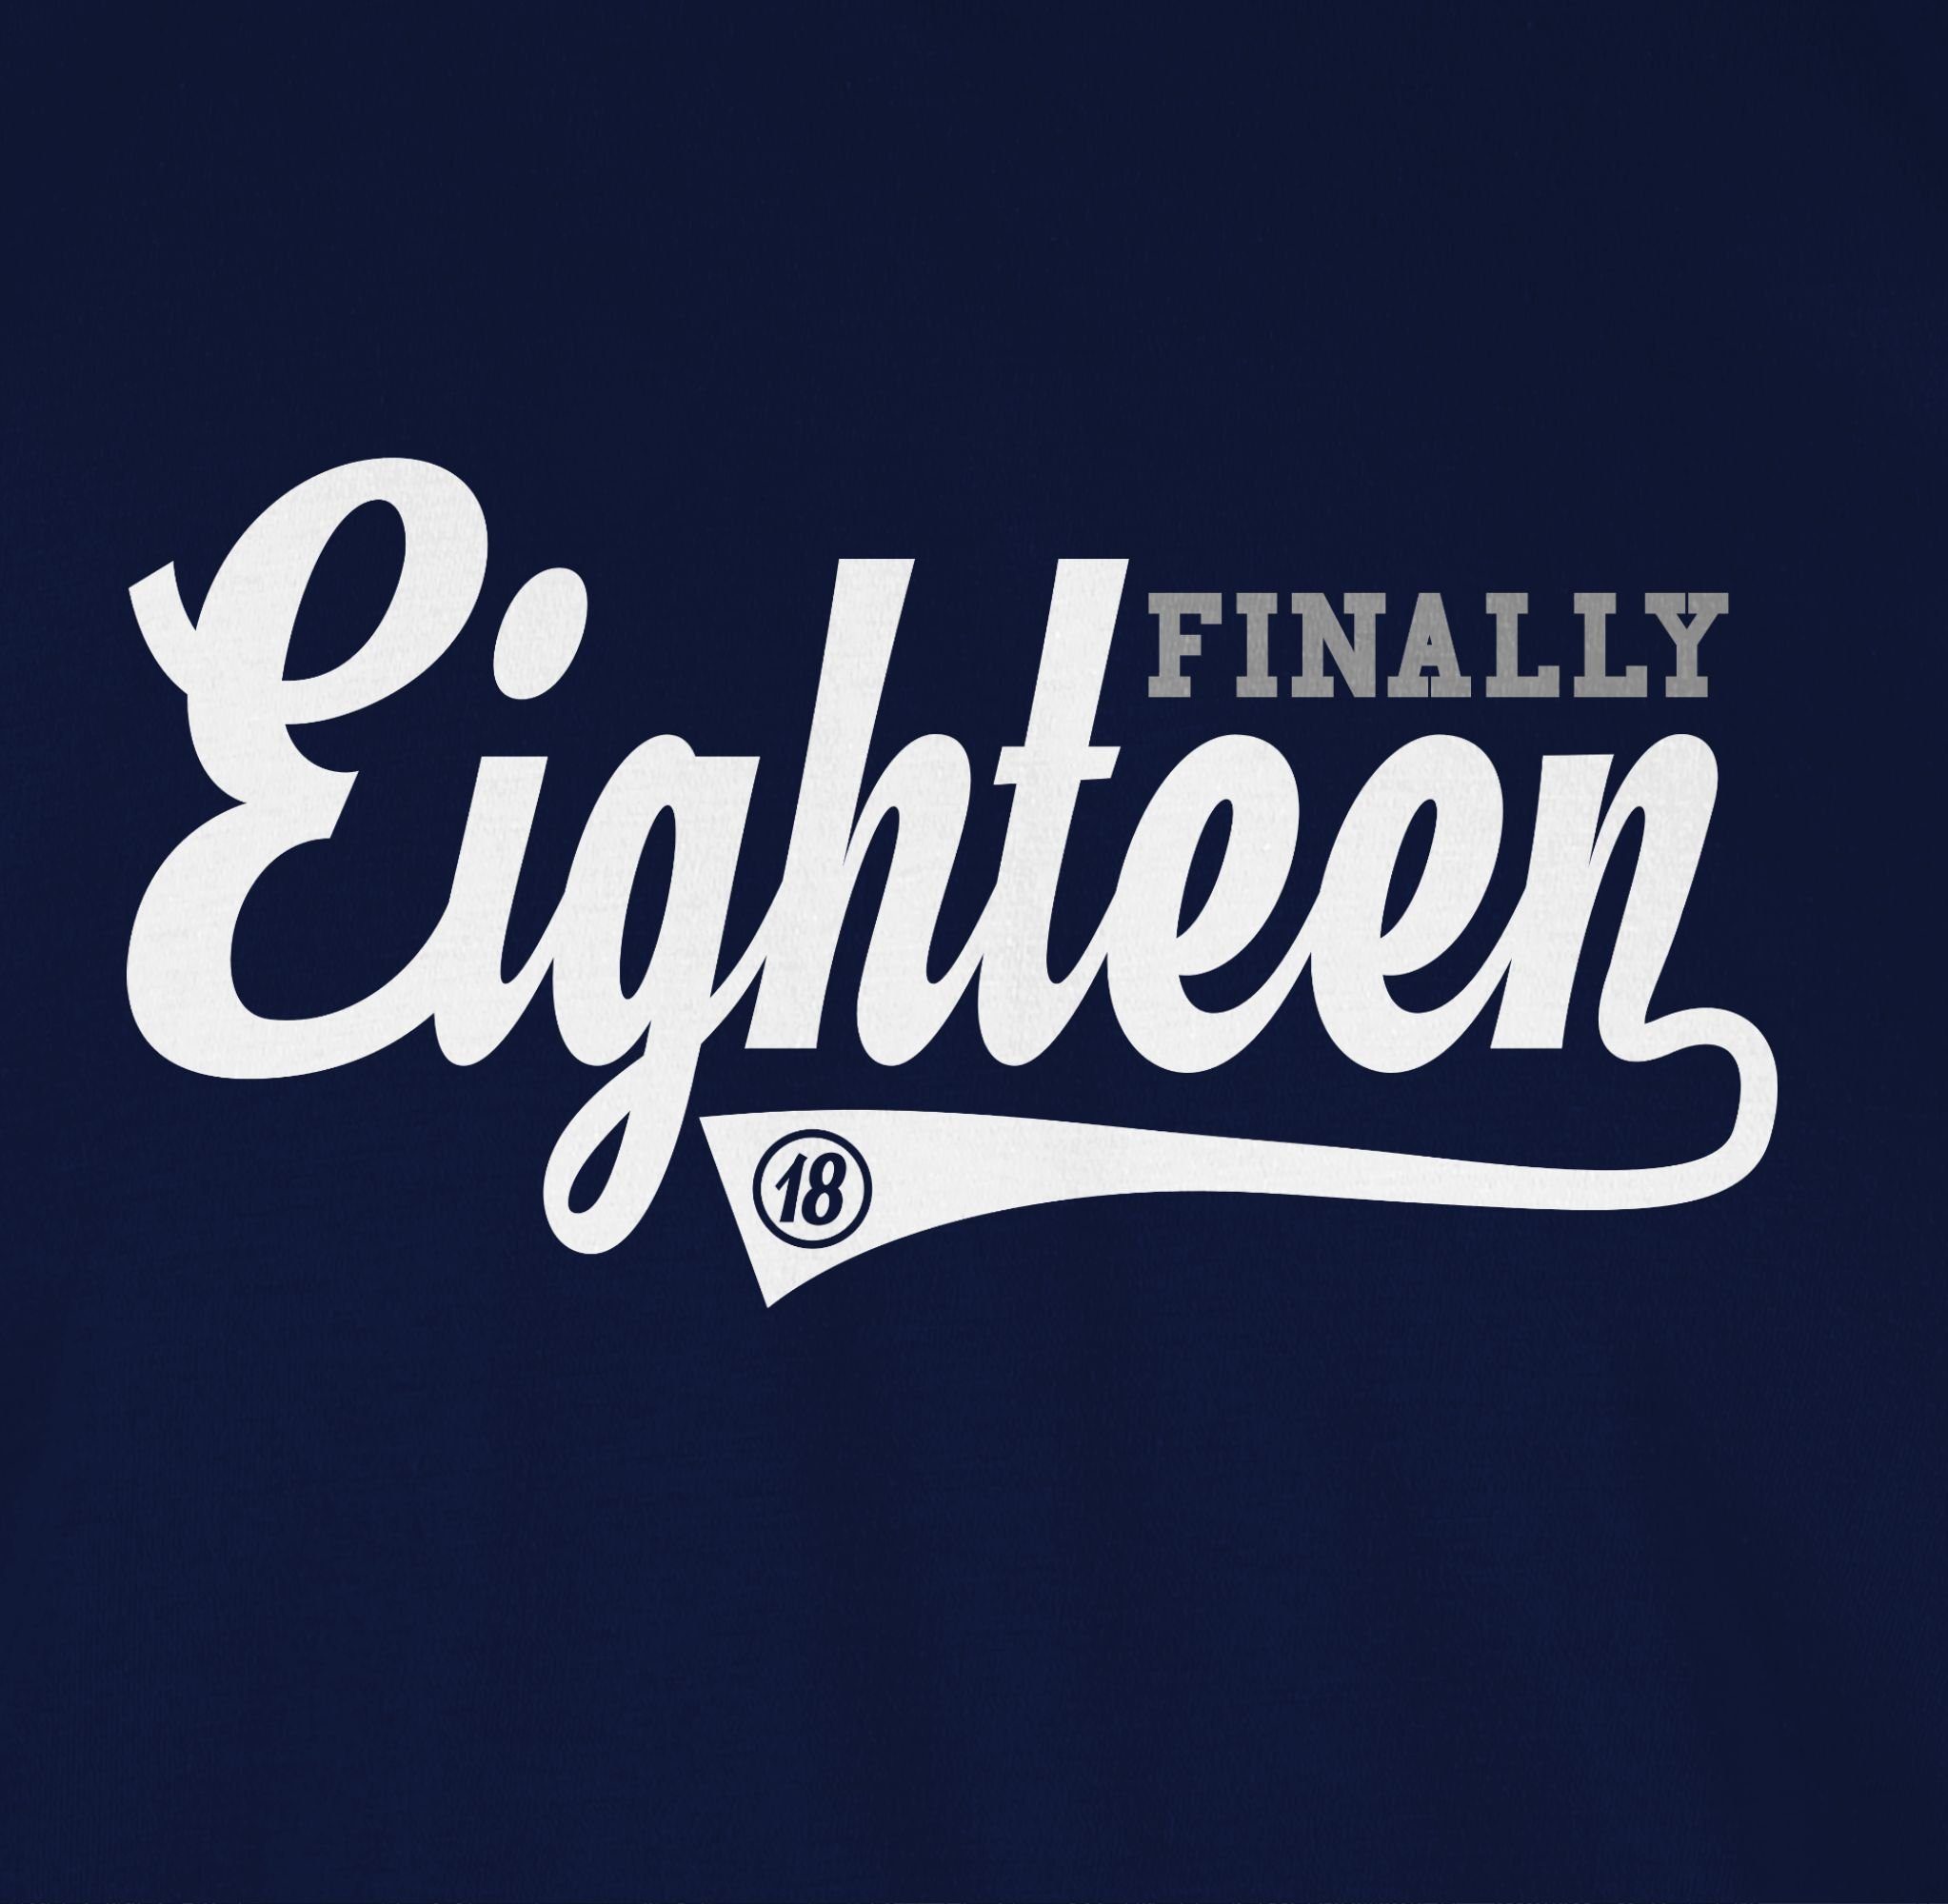 Damen Shirts Shirtracer T-Shirt Finally Eighteen College Stil - 18. Geburtstag - Damen T-Shirt mit V-Ausschnitt